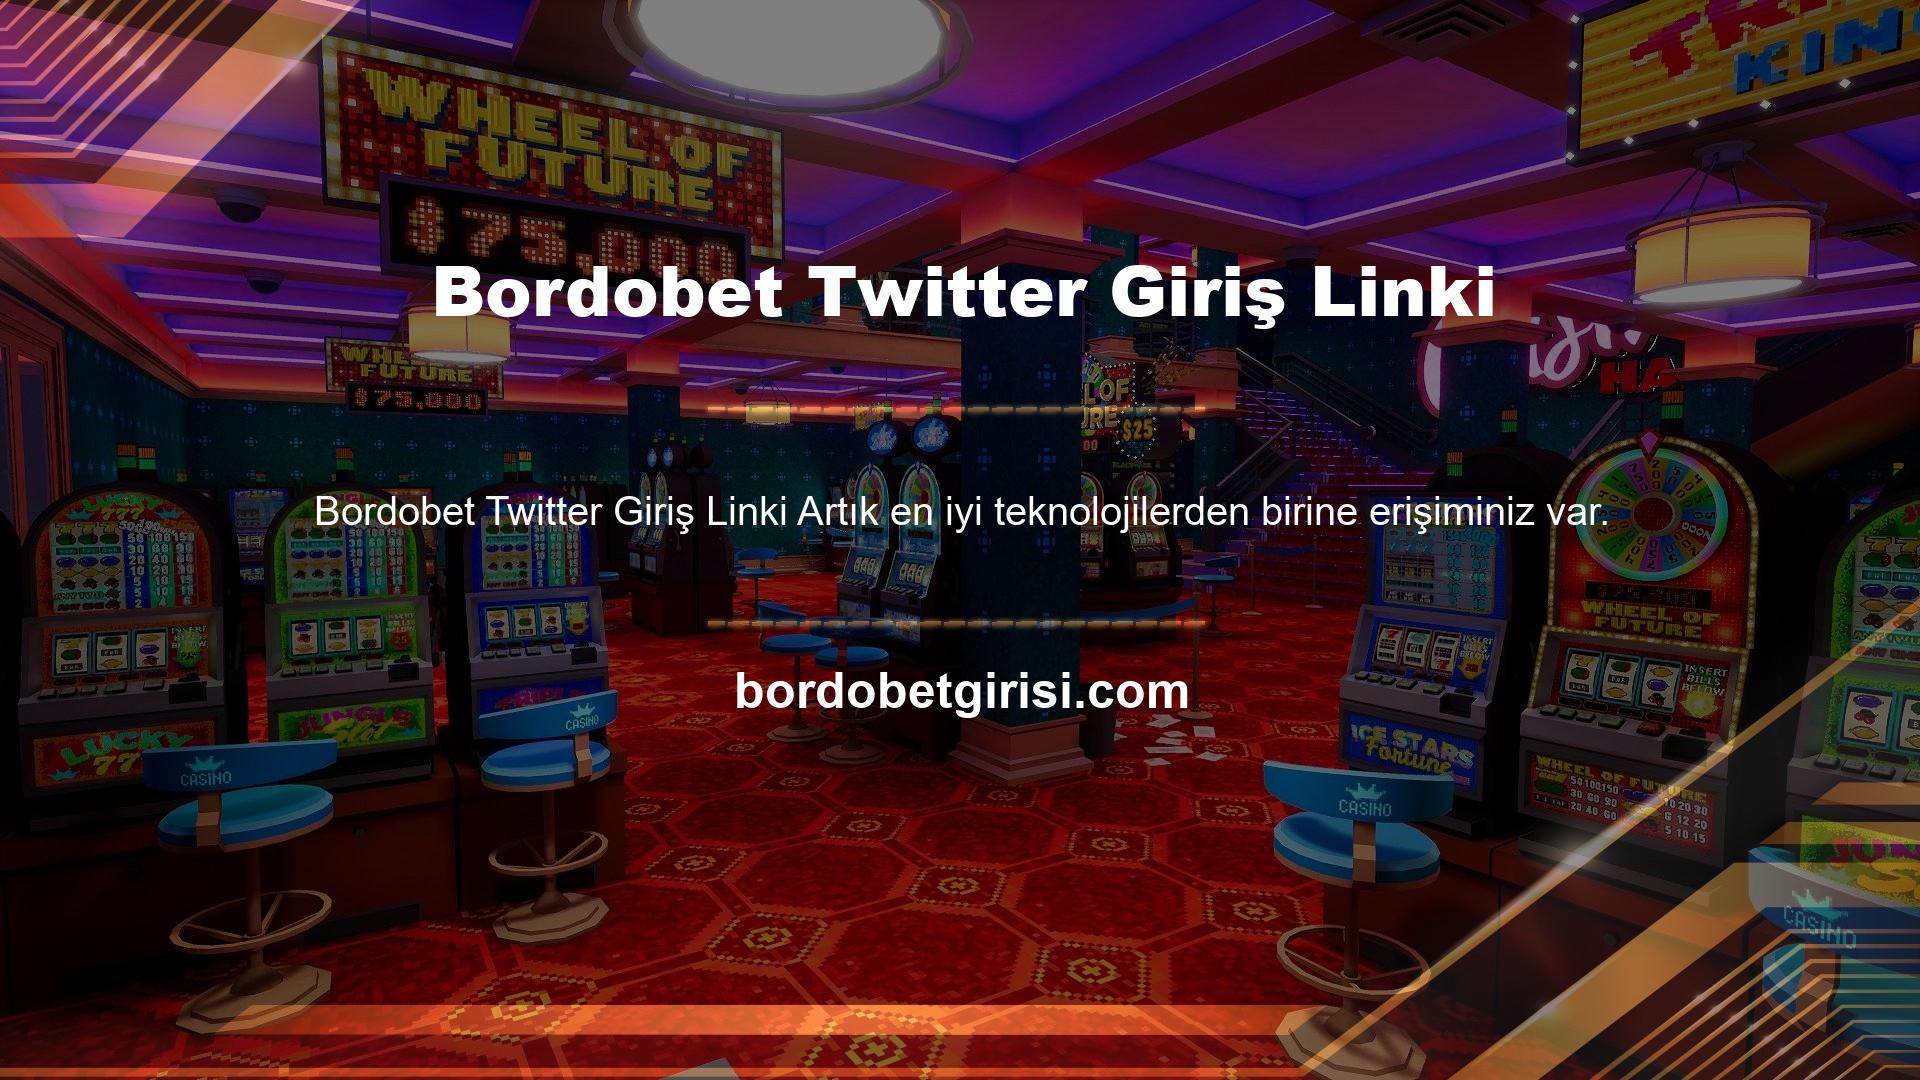 Bordobet giriş linki için bu kez Twitter kullanılacak